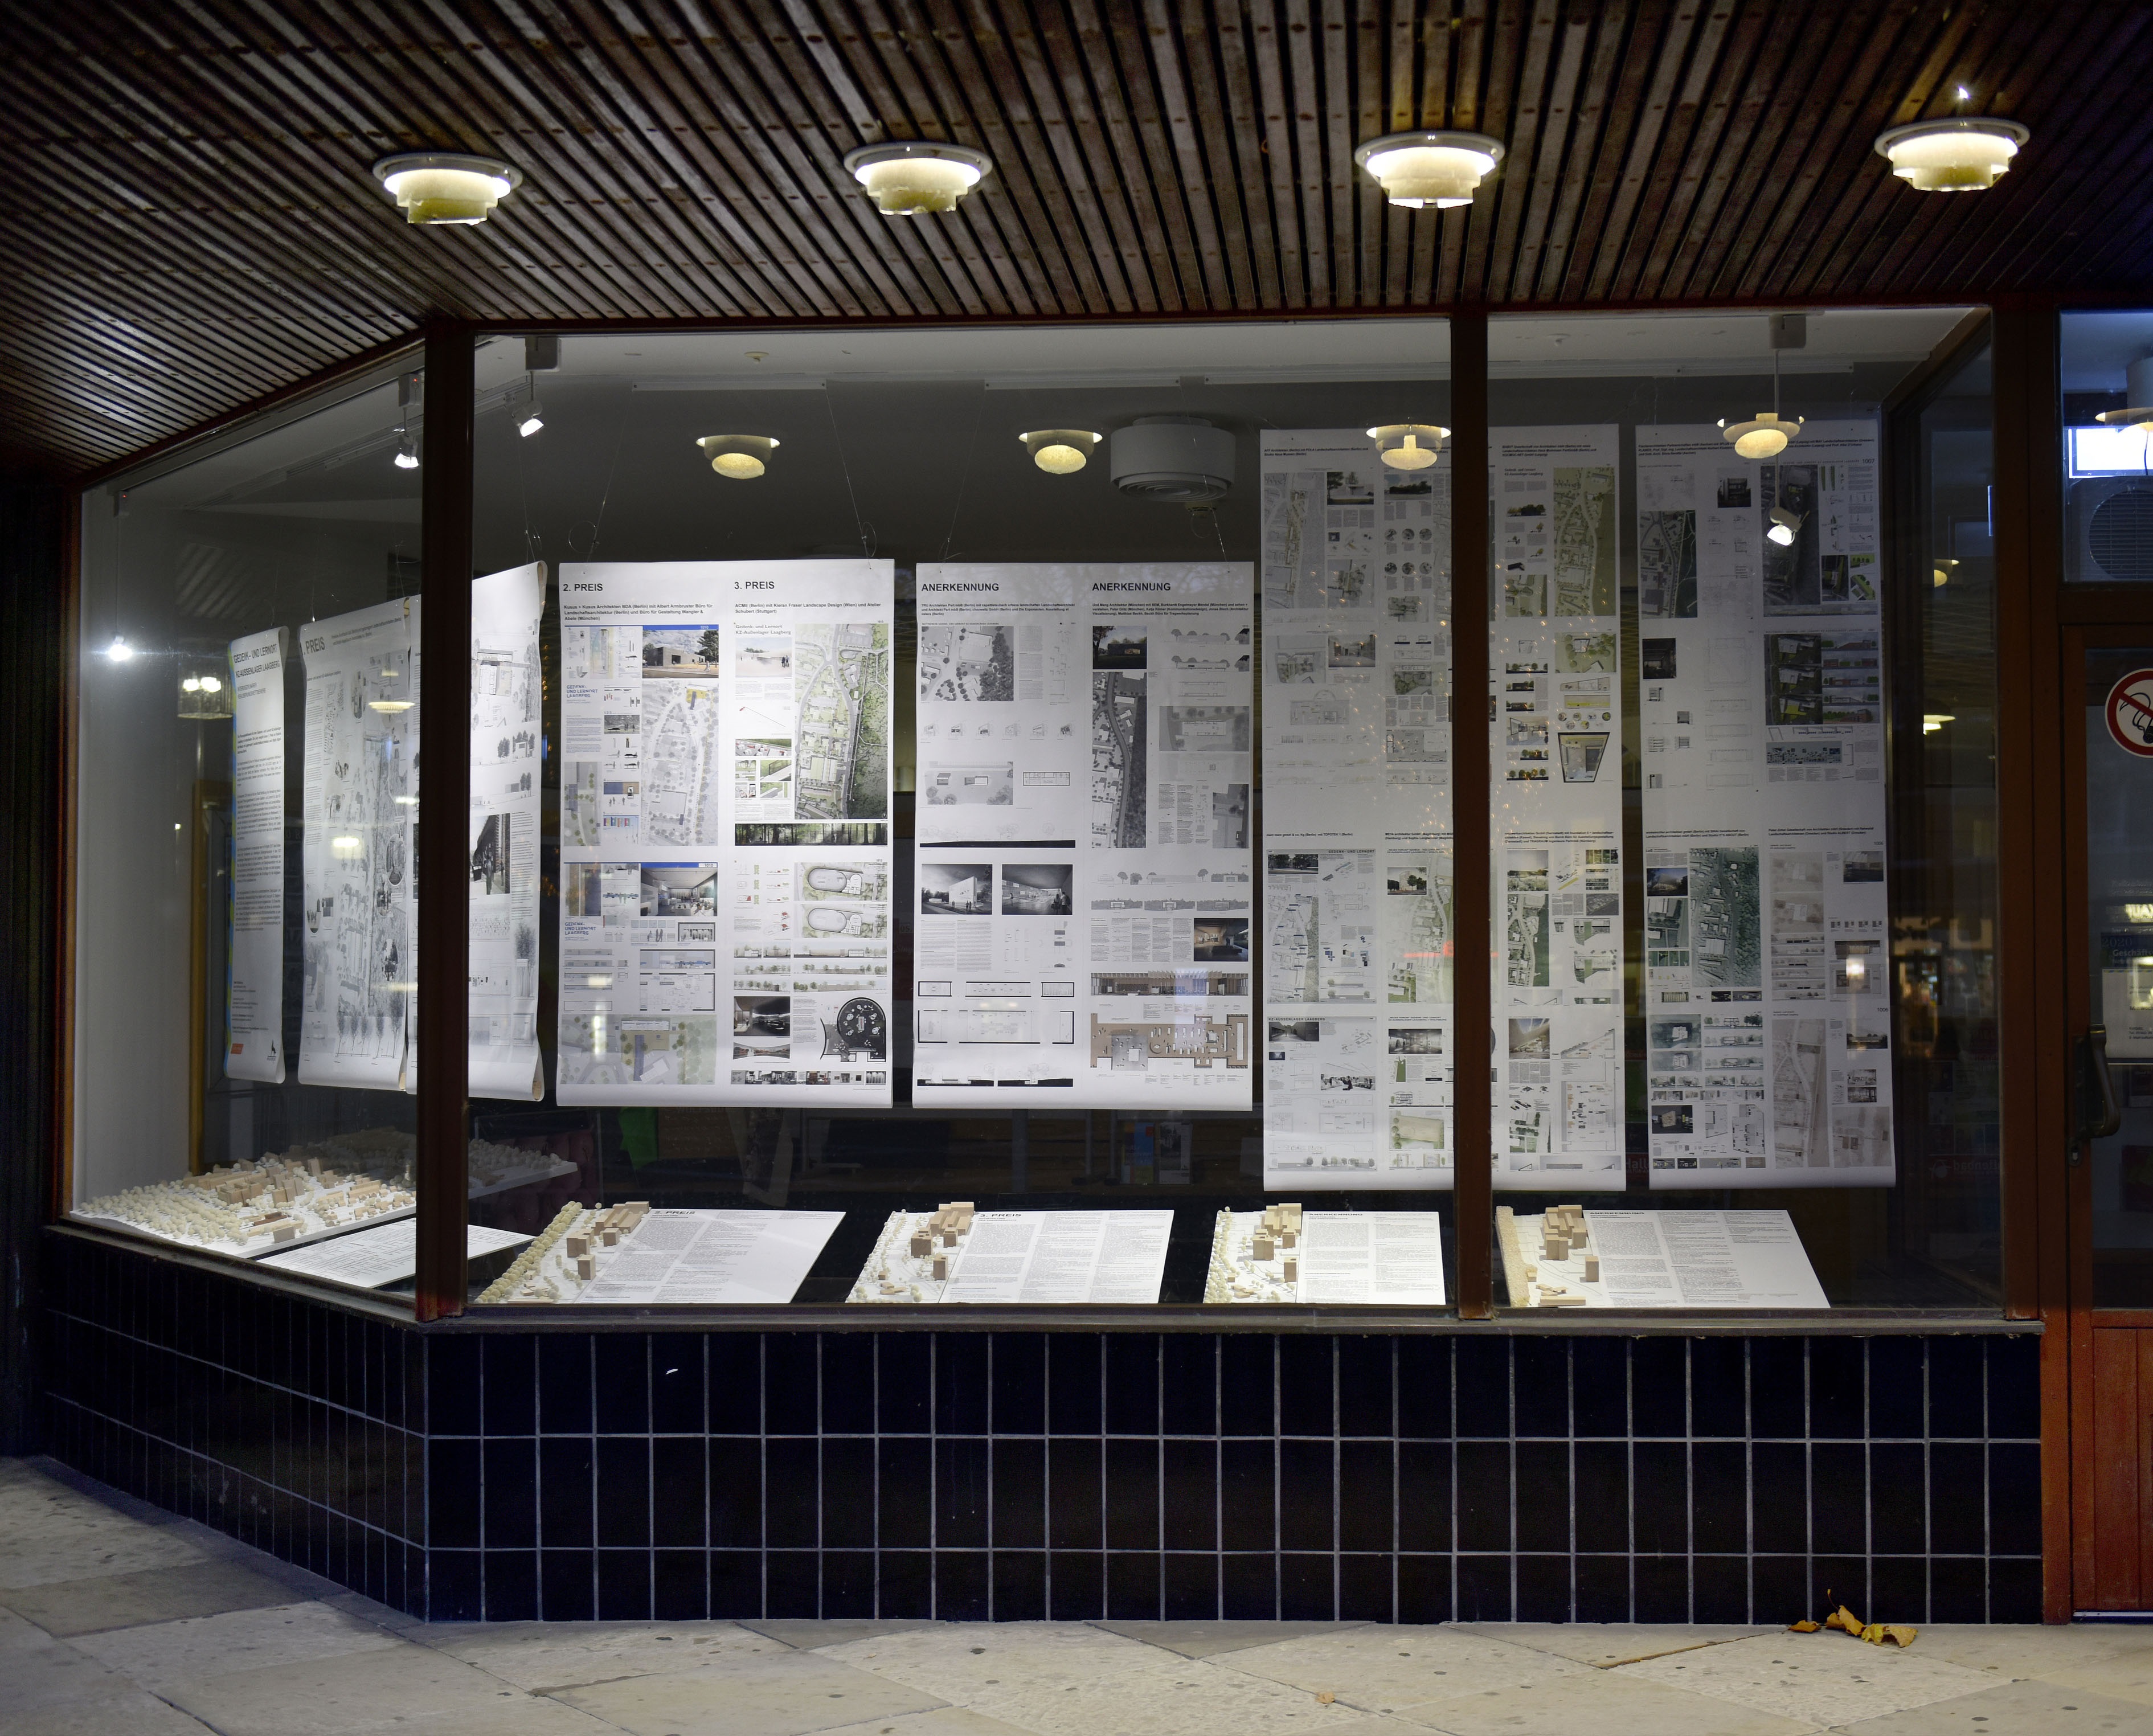 Gedenk- und Lernort Laagberg - Das Wettbewerbsergebnis einschließlich der Modelle werden im Schaufenster des Alvar-Aalto-Kulturhauses ausgestellt